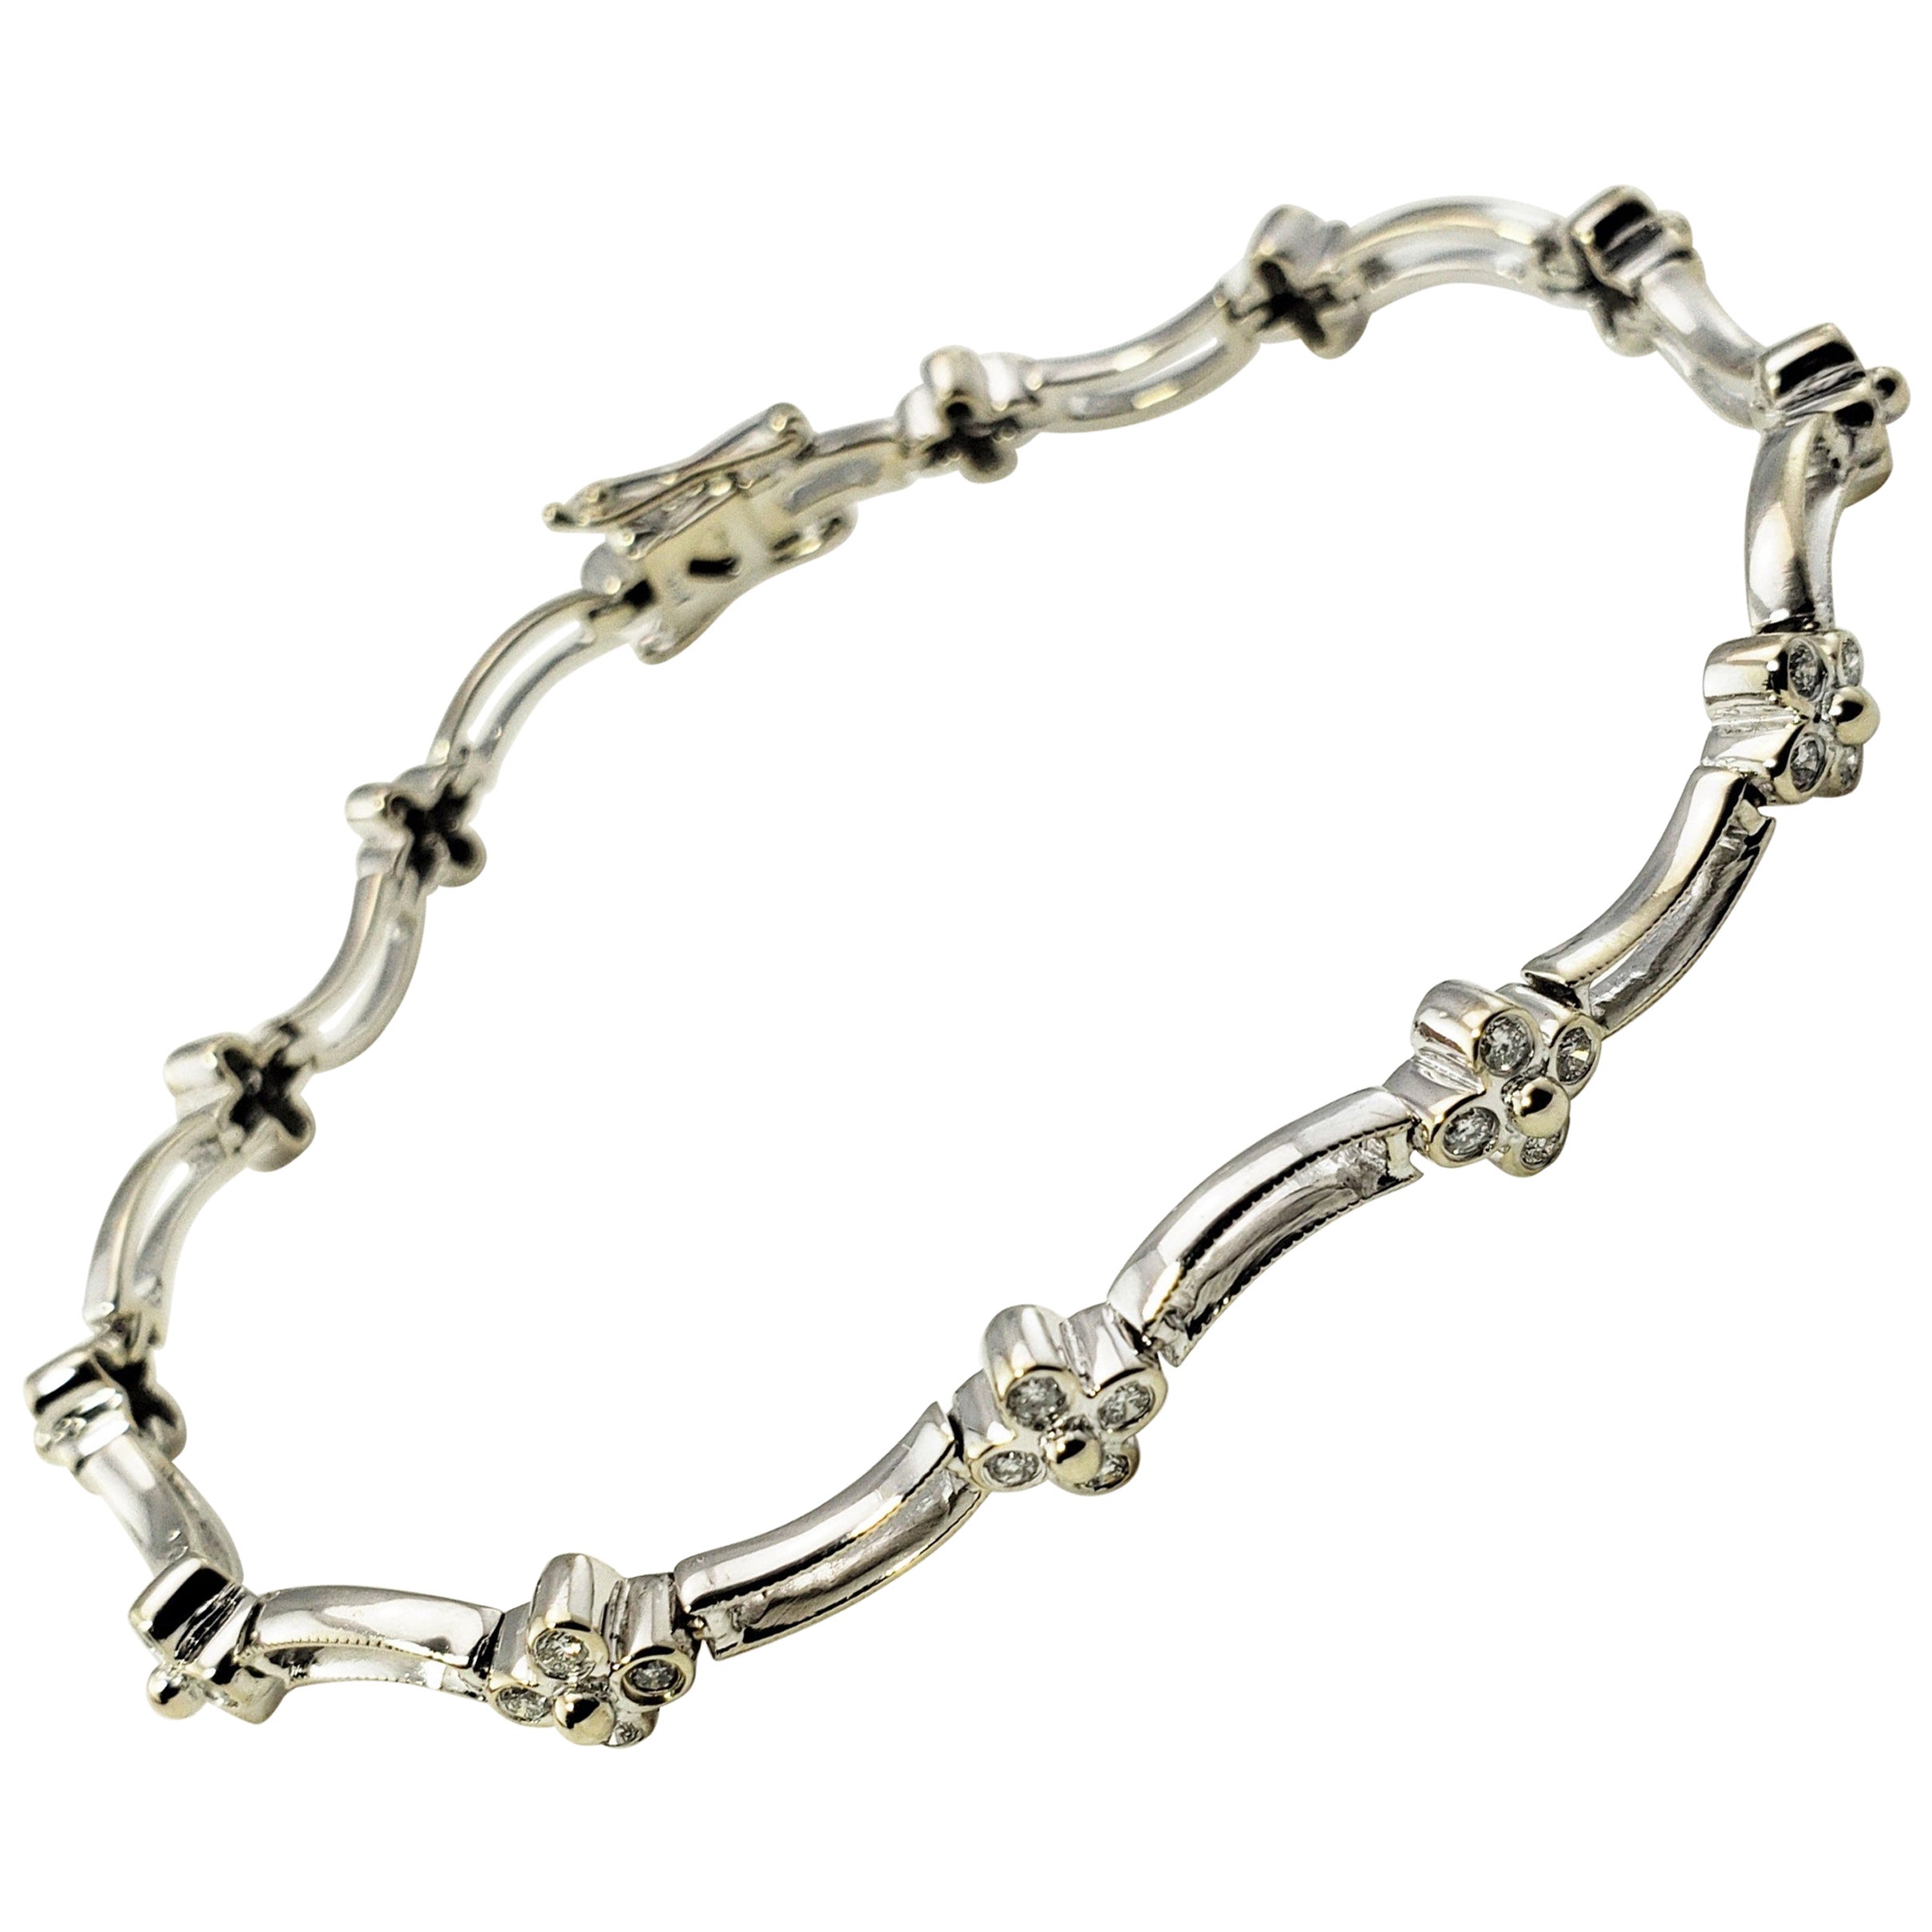 18 Karat White Gold Diamond Flower Bracelet